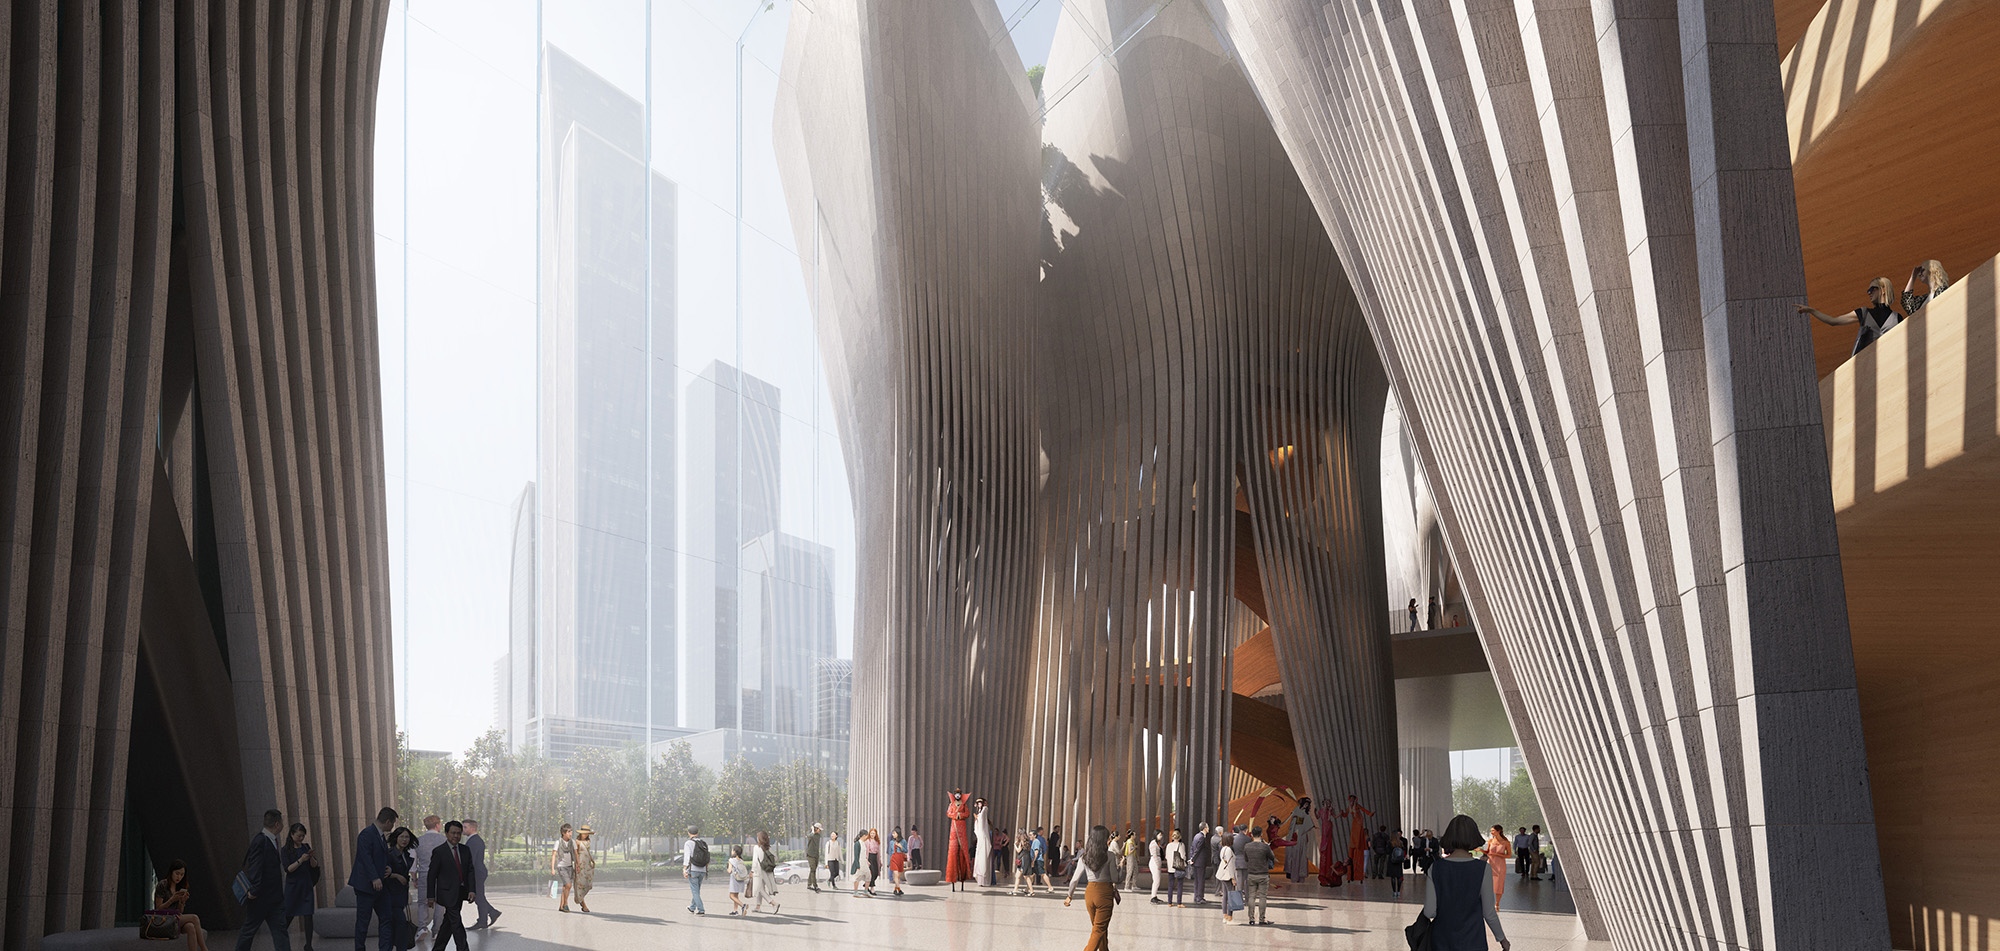 Shenzhen Nemzetközi Előadóművészeti Központ – The Greypixel | ZDA-Zoboki Építésziroda